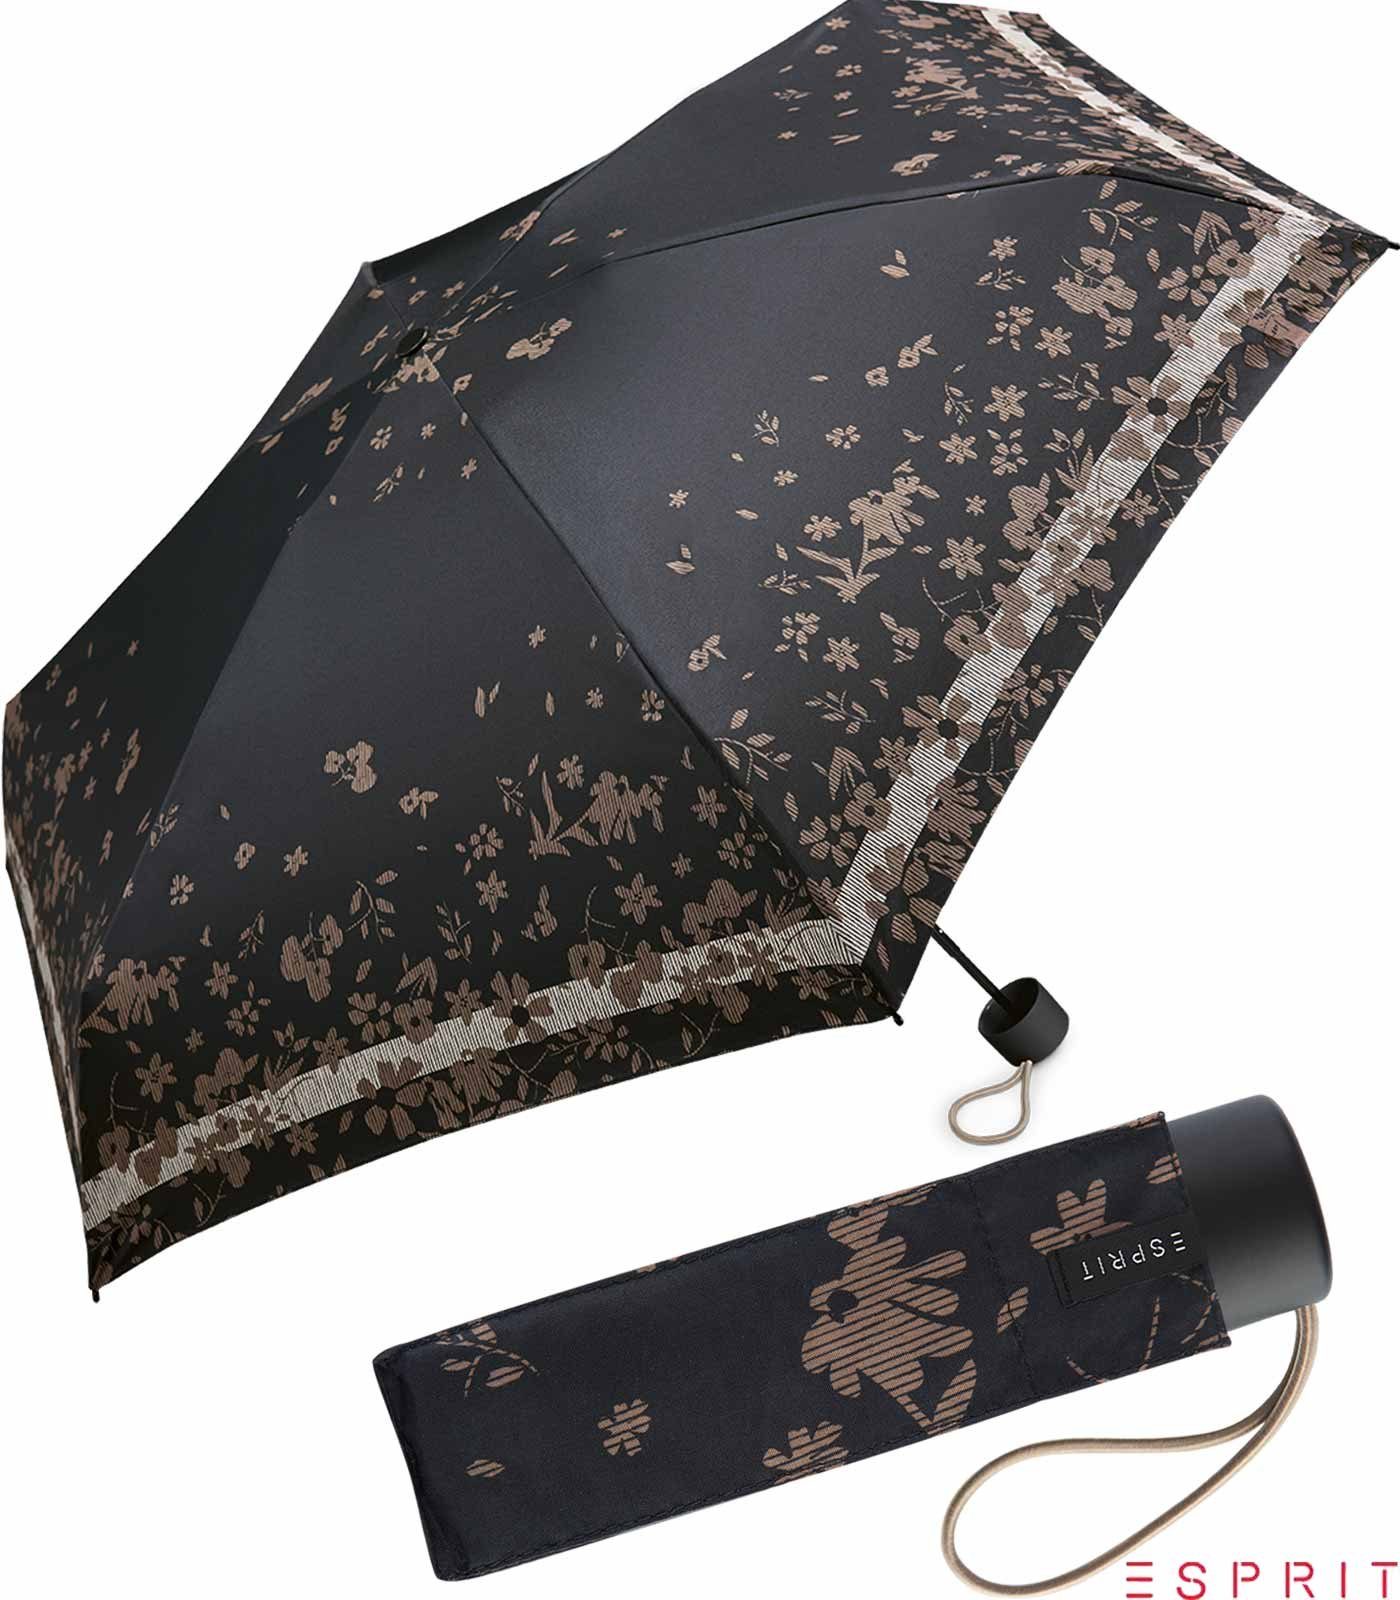 Esprit Taschenregenschirm Damen Super Mini Regenschirm Petito Poetry Flower - black, winzig klein, mit Blumenmuster schwarz